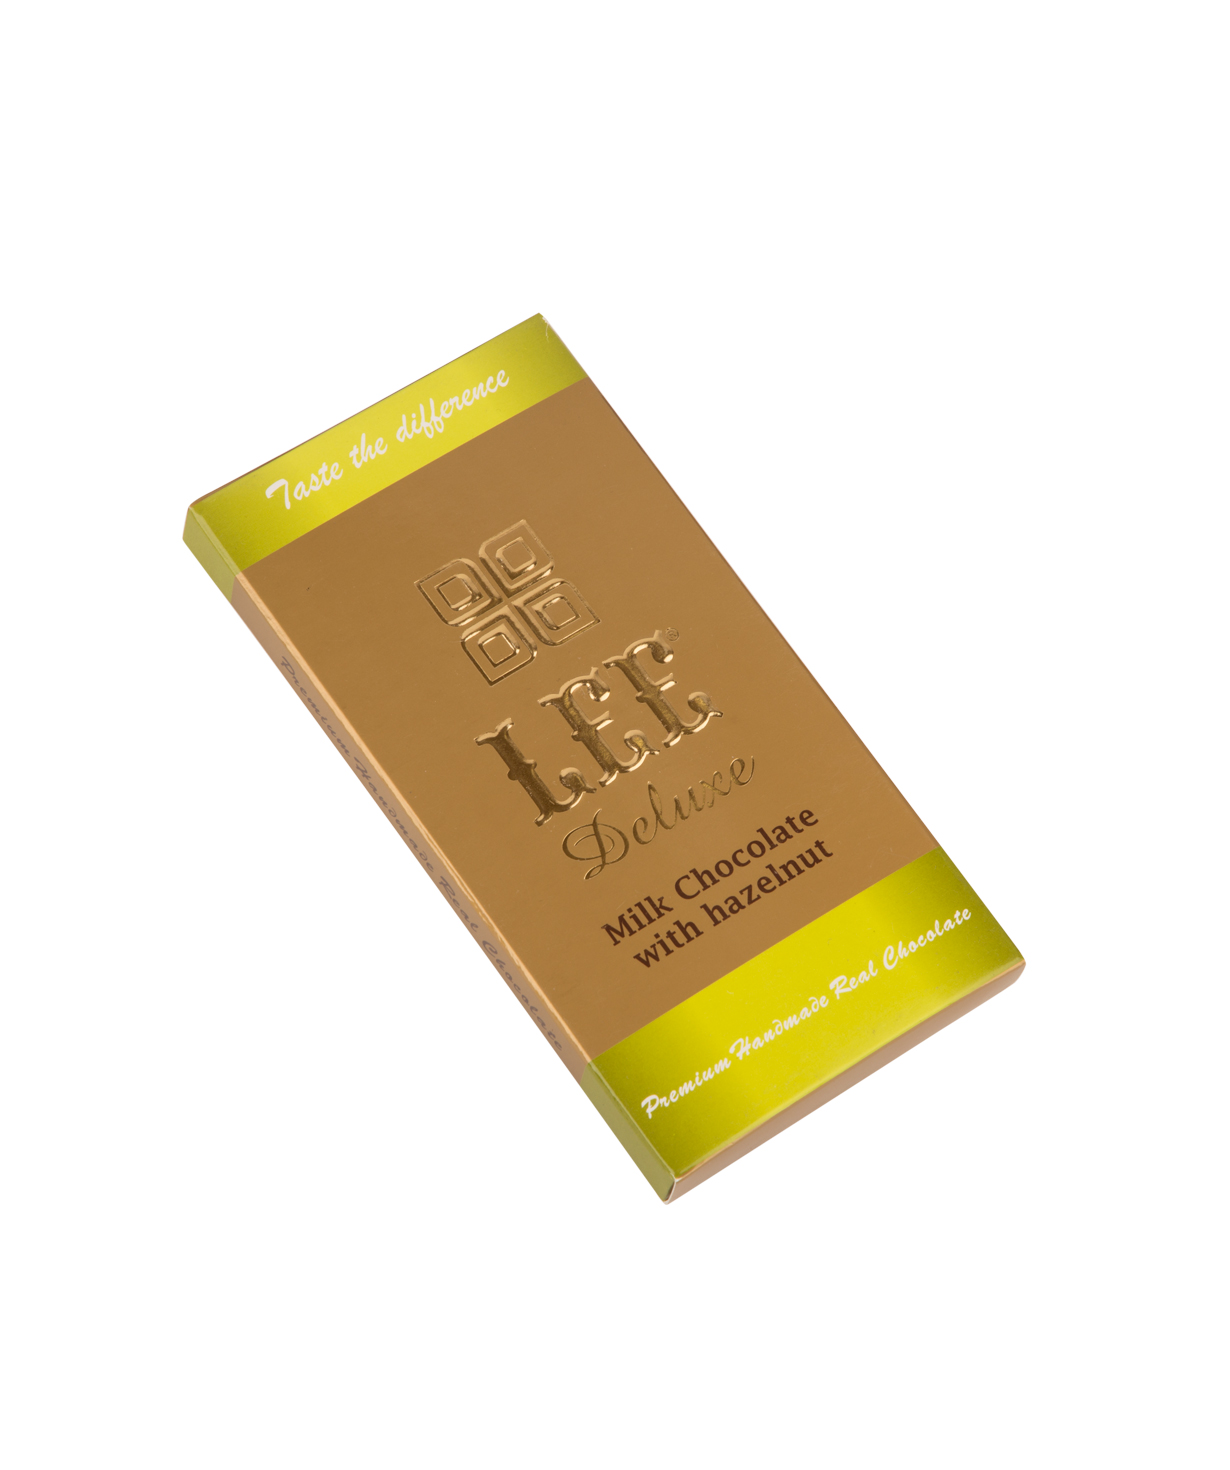 Плитка шоколада `Lee` с молочным шоколадом лесным орехом